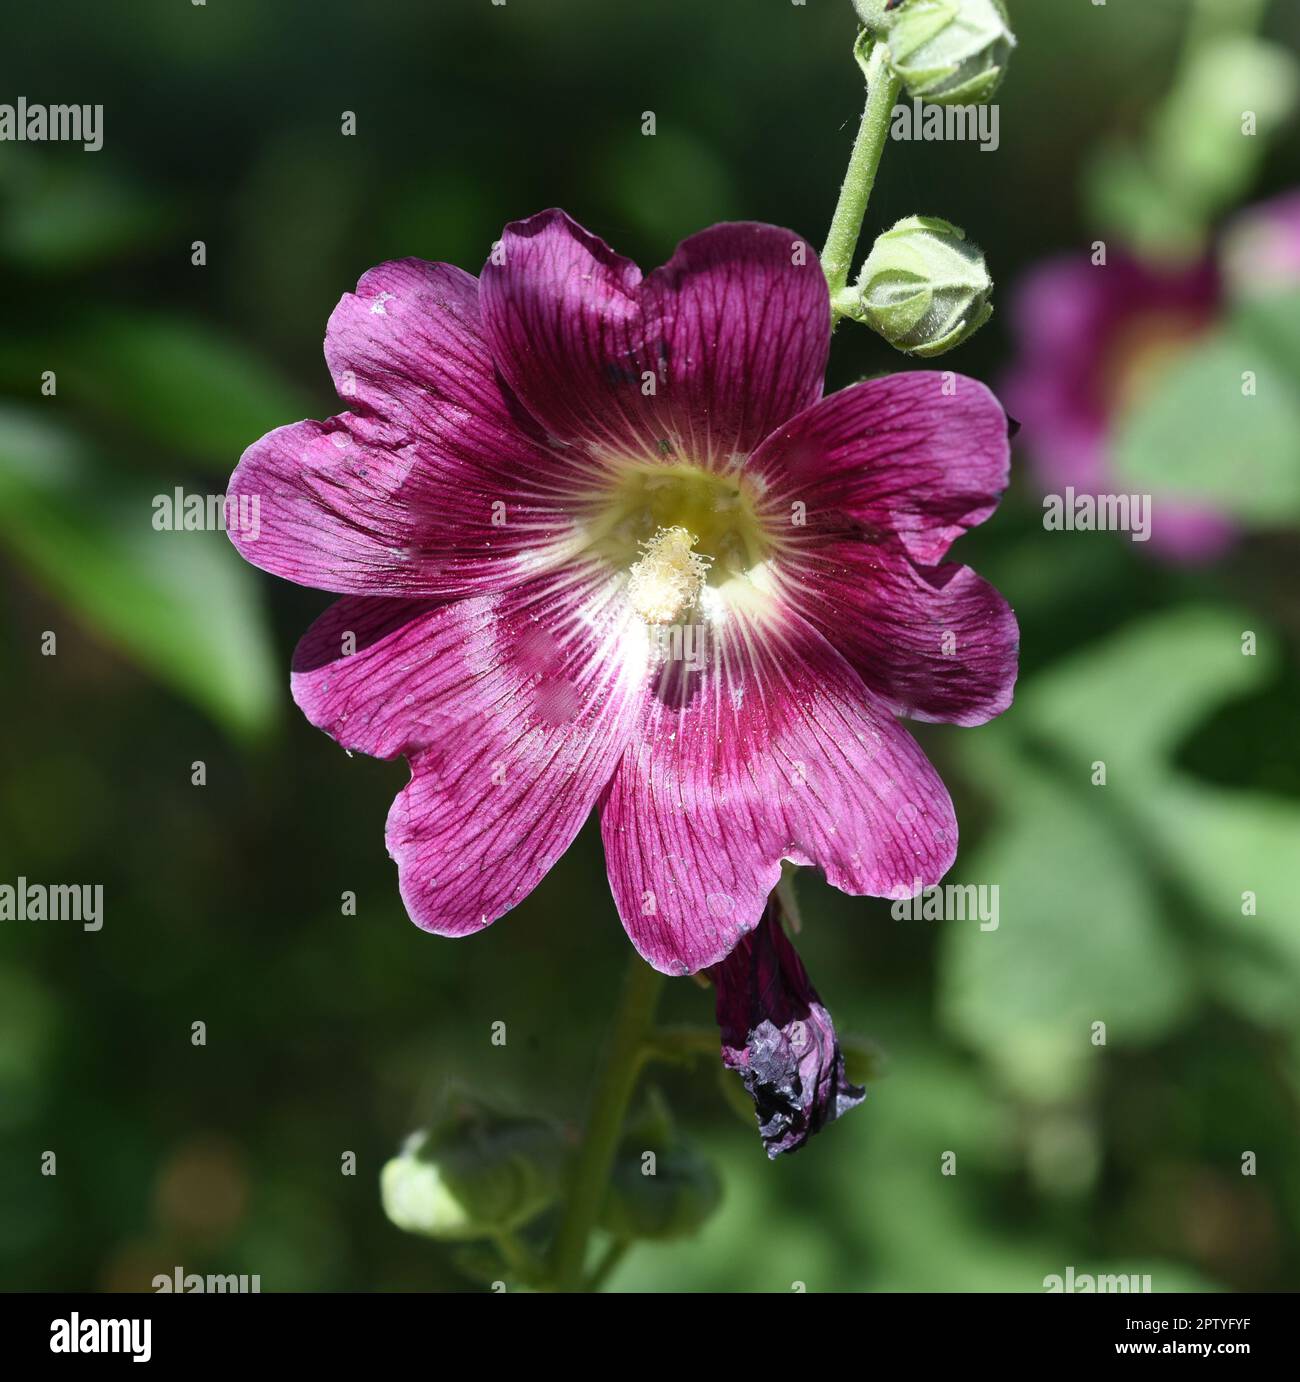 Stockrose, Alcea rosea, auch unter den Namen Stockmalve oder Bauernrose bekannt ist eine schoene Gartenblume und eine Heilpflanze. Hollyhock, Alcea ro Foto de stock